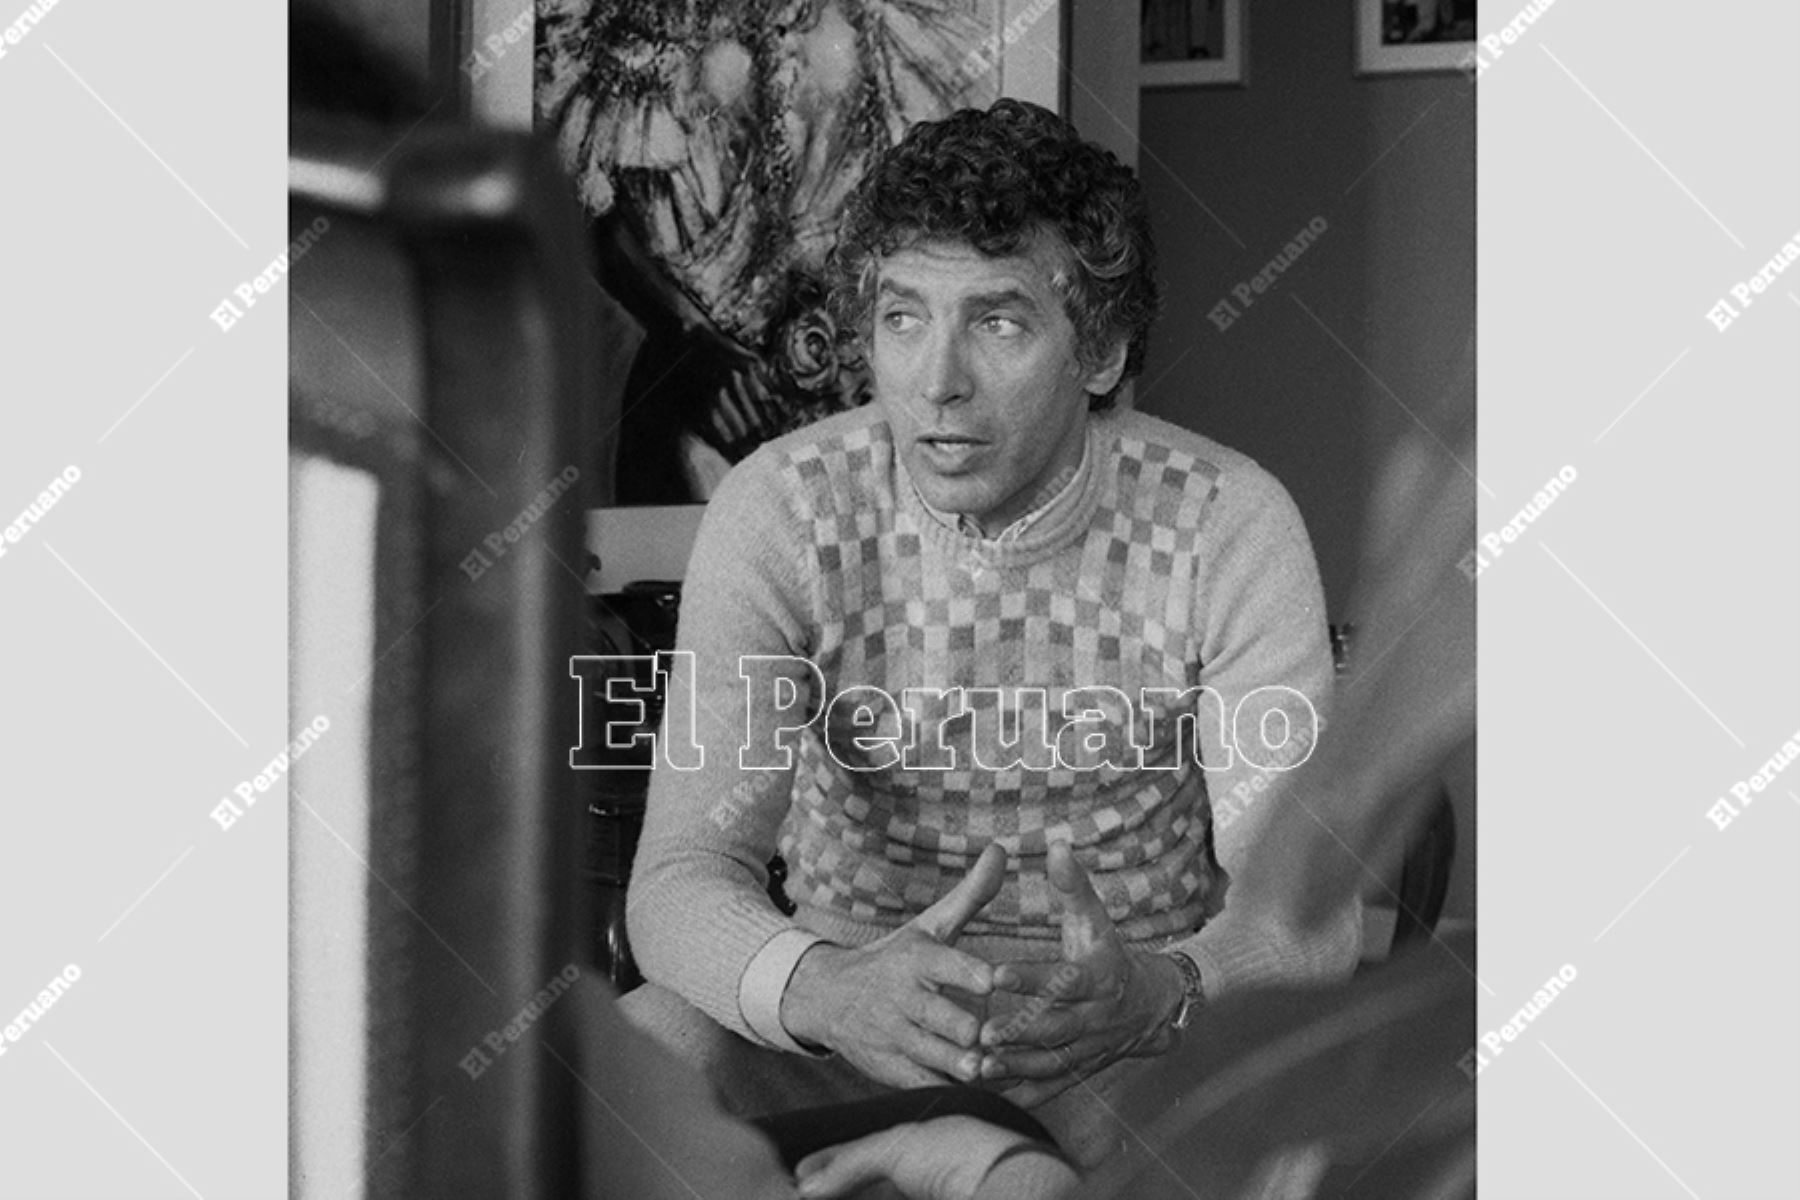 Lima - 26 julio 1977 / Entrevista a Osvaldo Cattone, actor y director de teatro. Foto: Archivo Histórico de El Peruano / Humberto Romaní